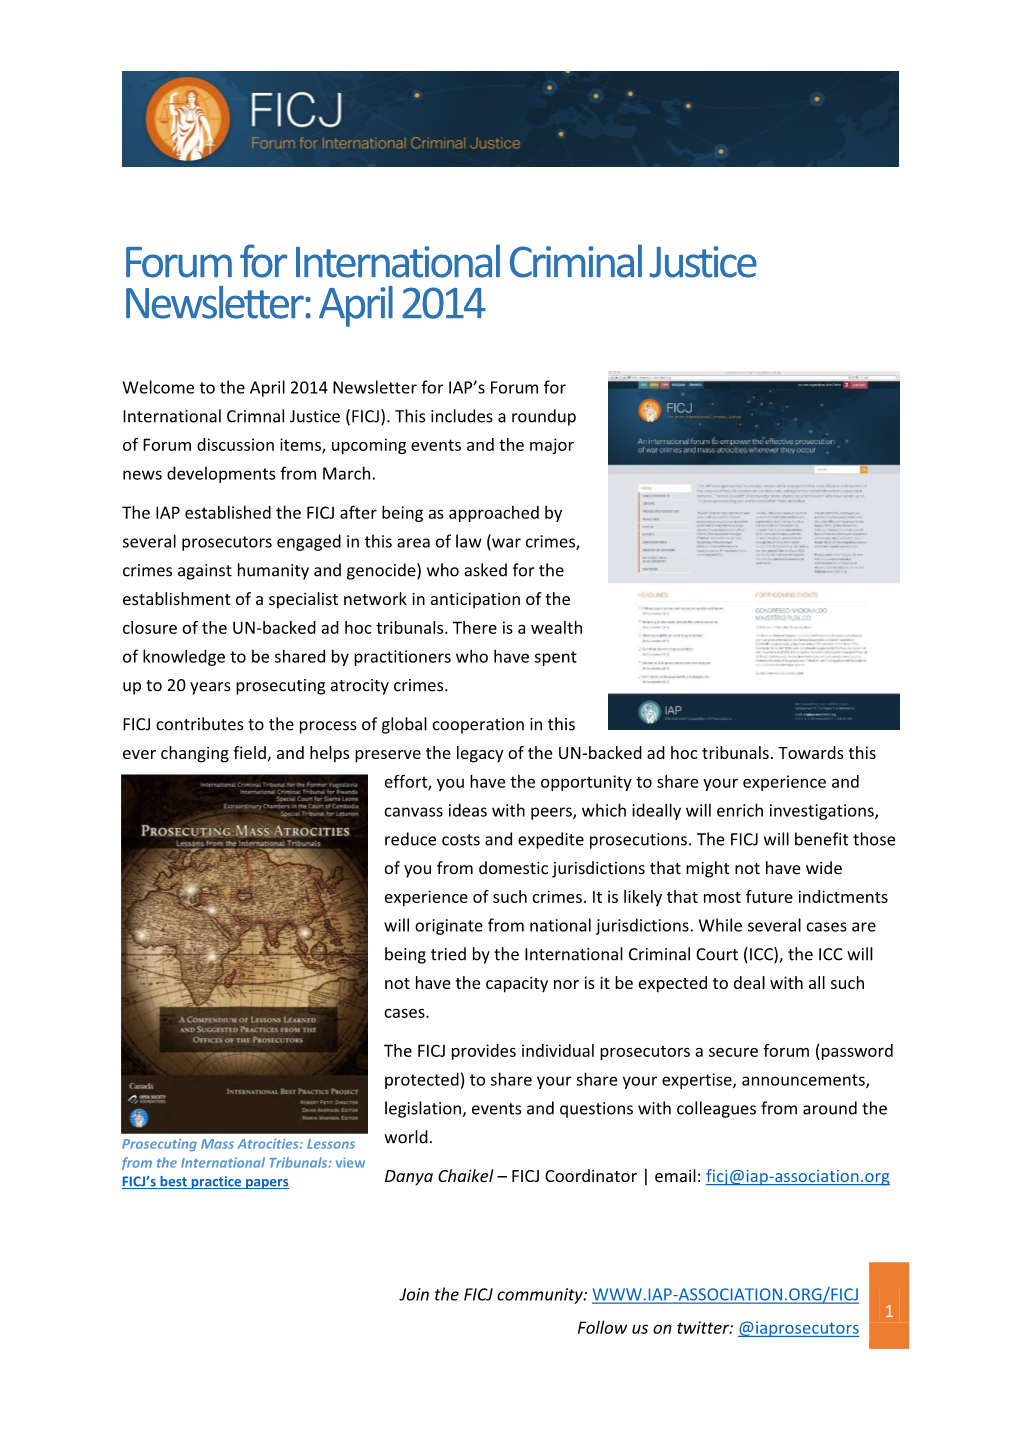 Forum for International Criminal Justice Newsletter: April 2014